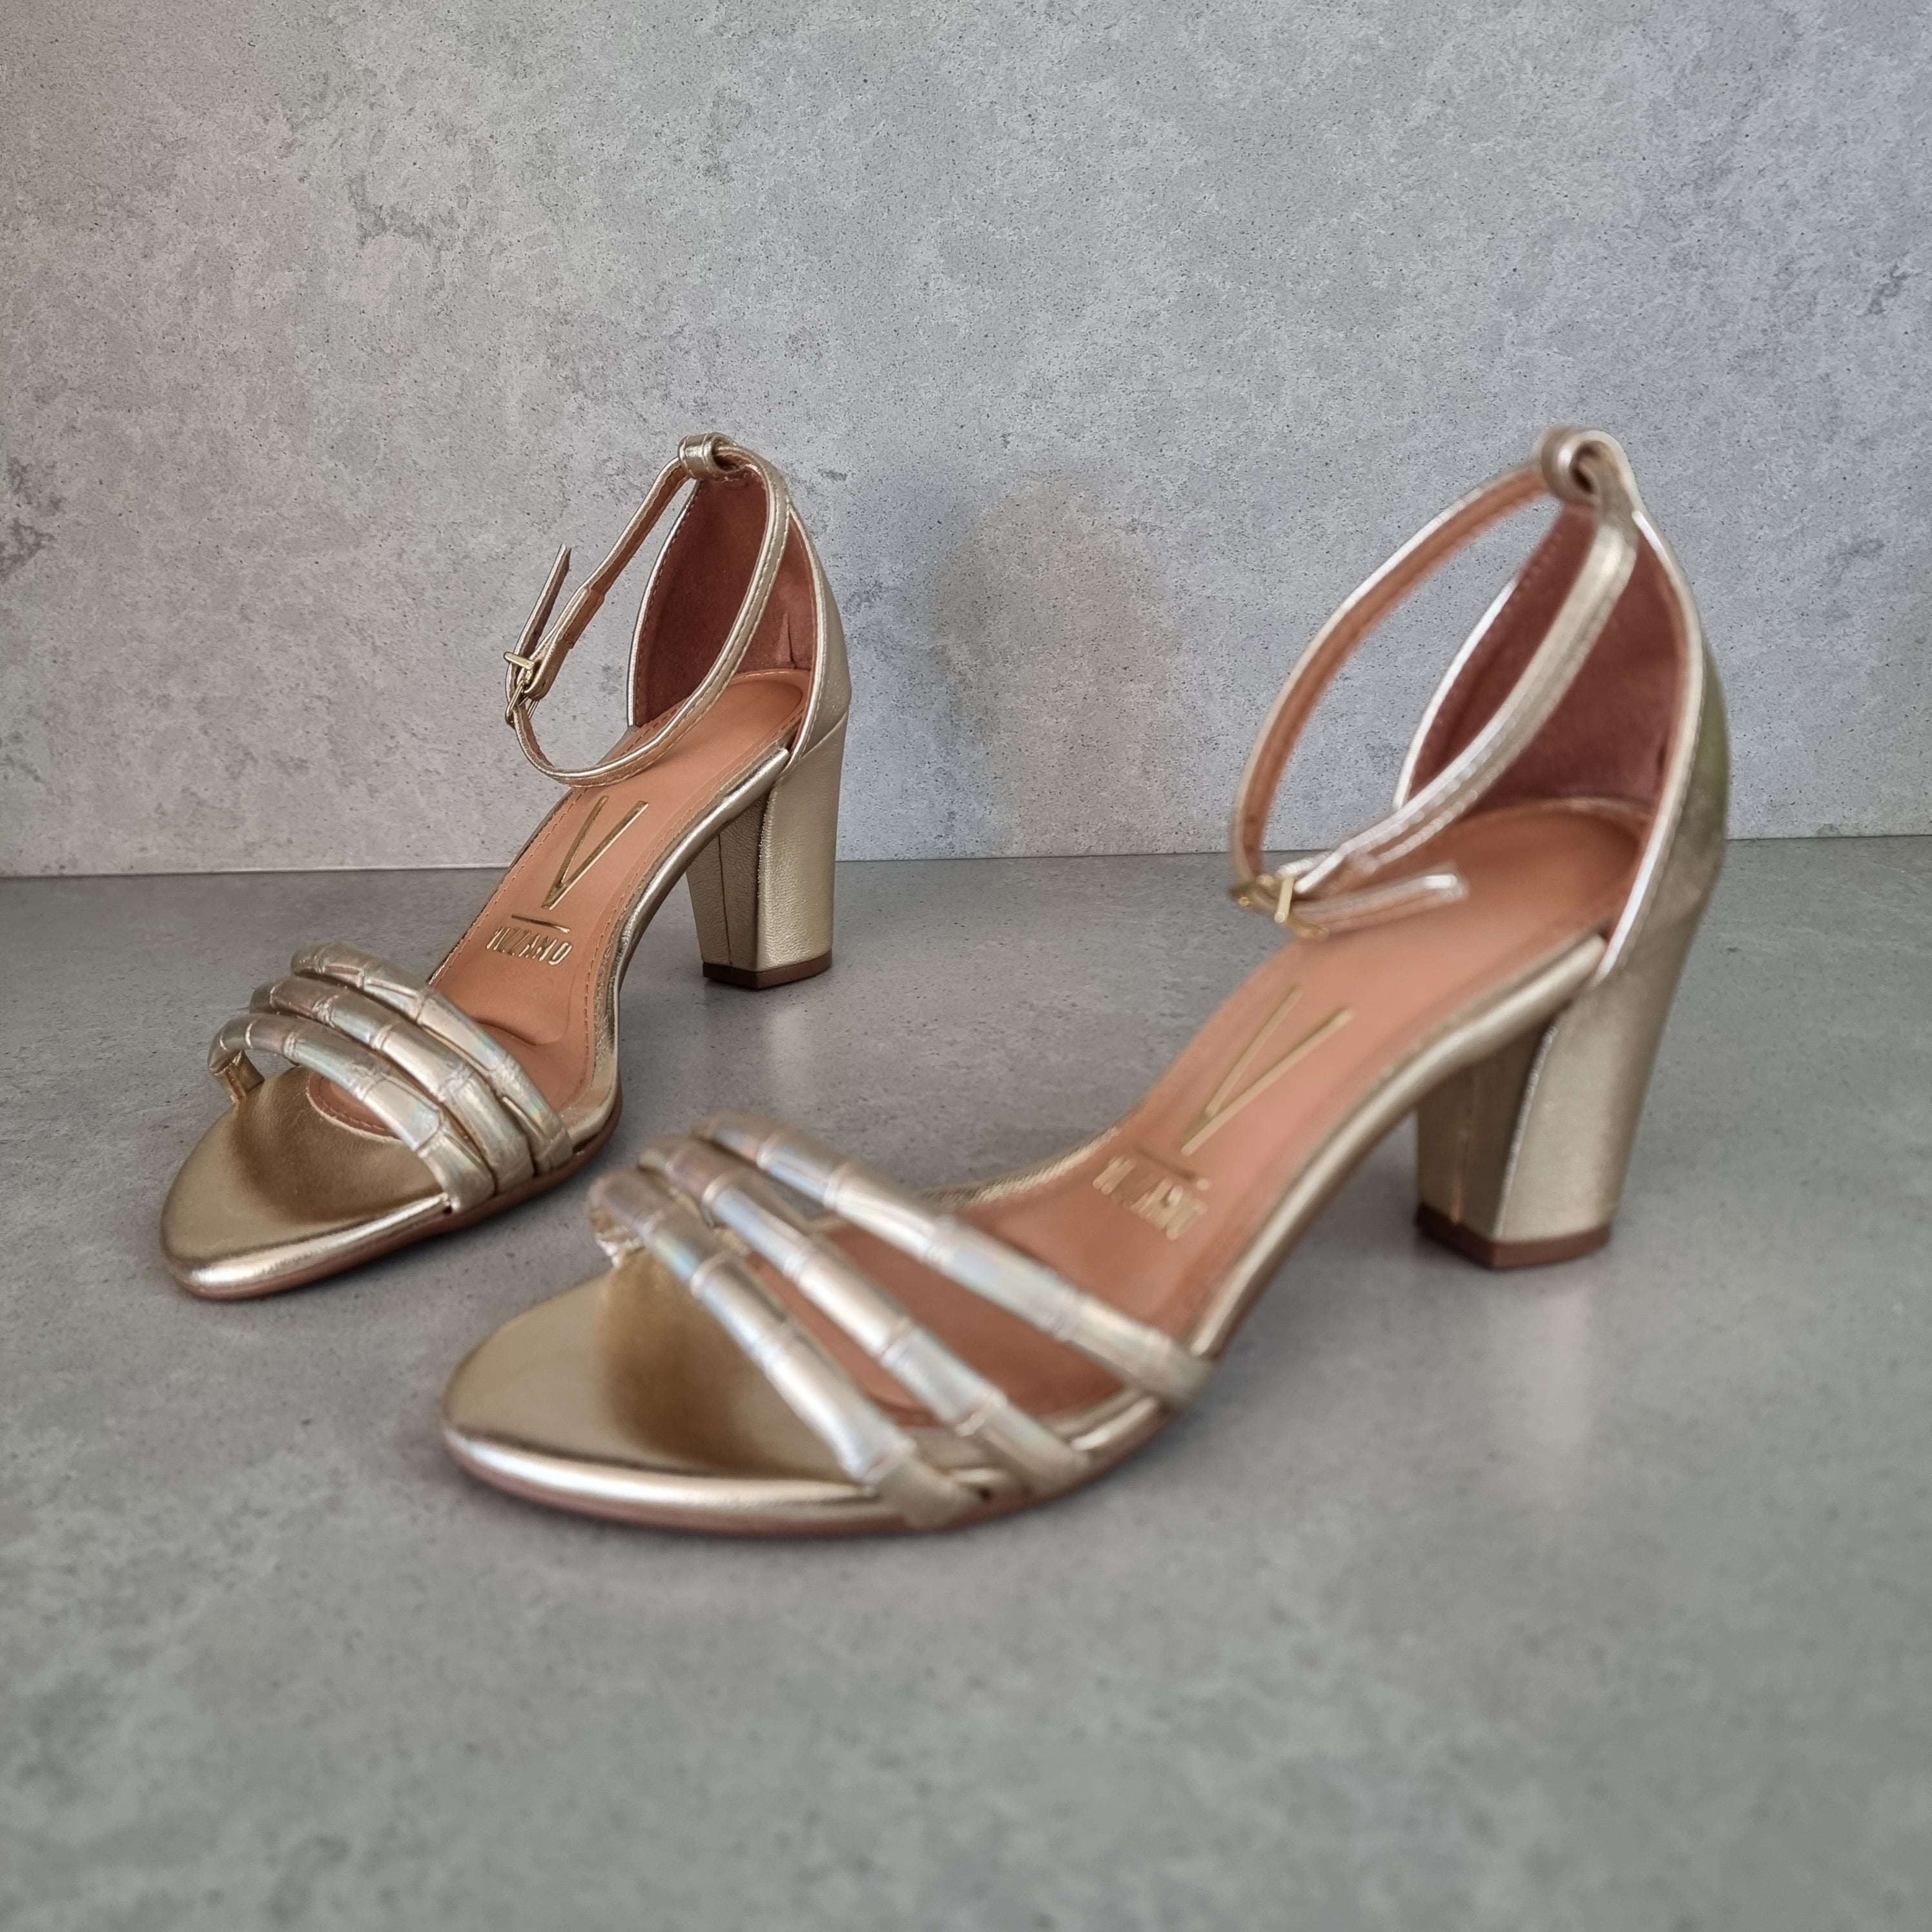 Vizzano 6262-1207 Block Heel Sandal in Golden